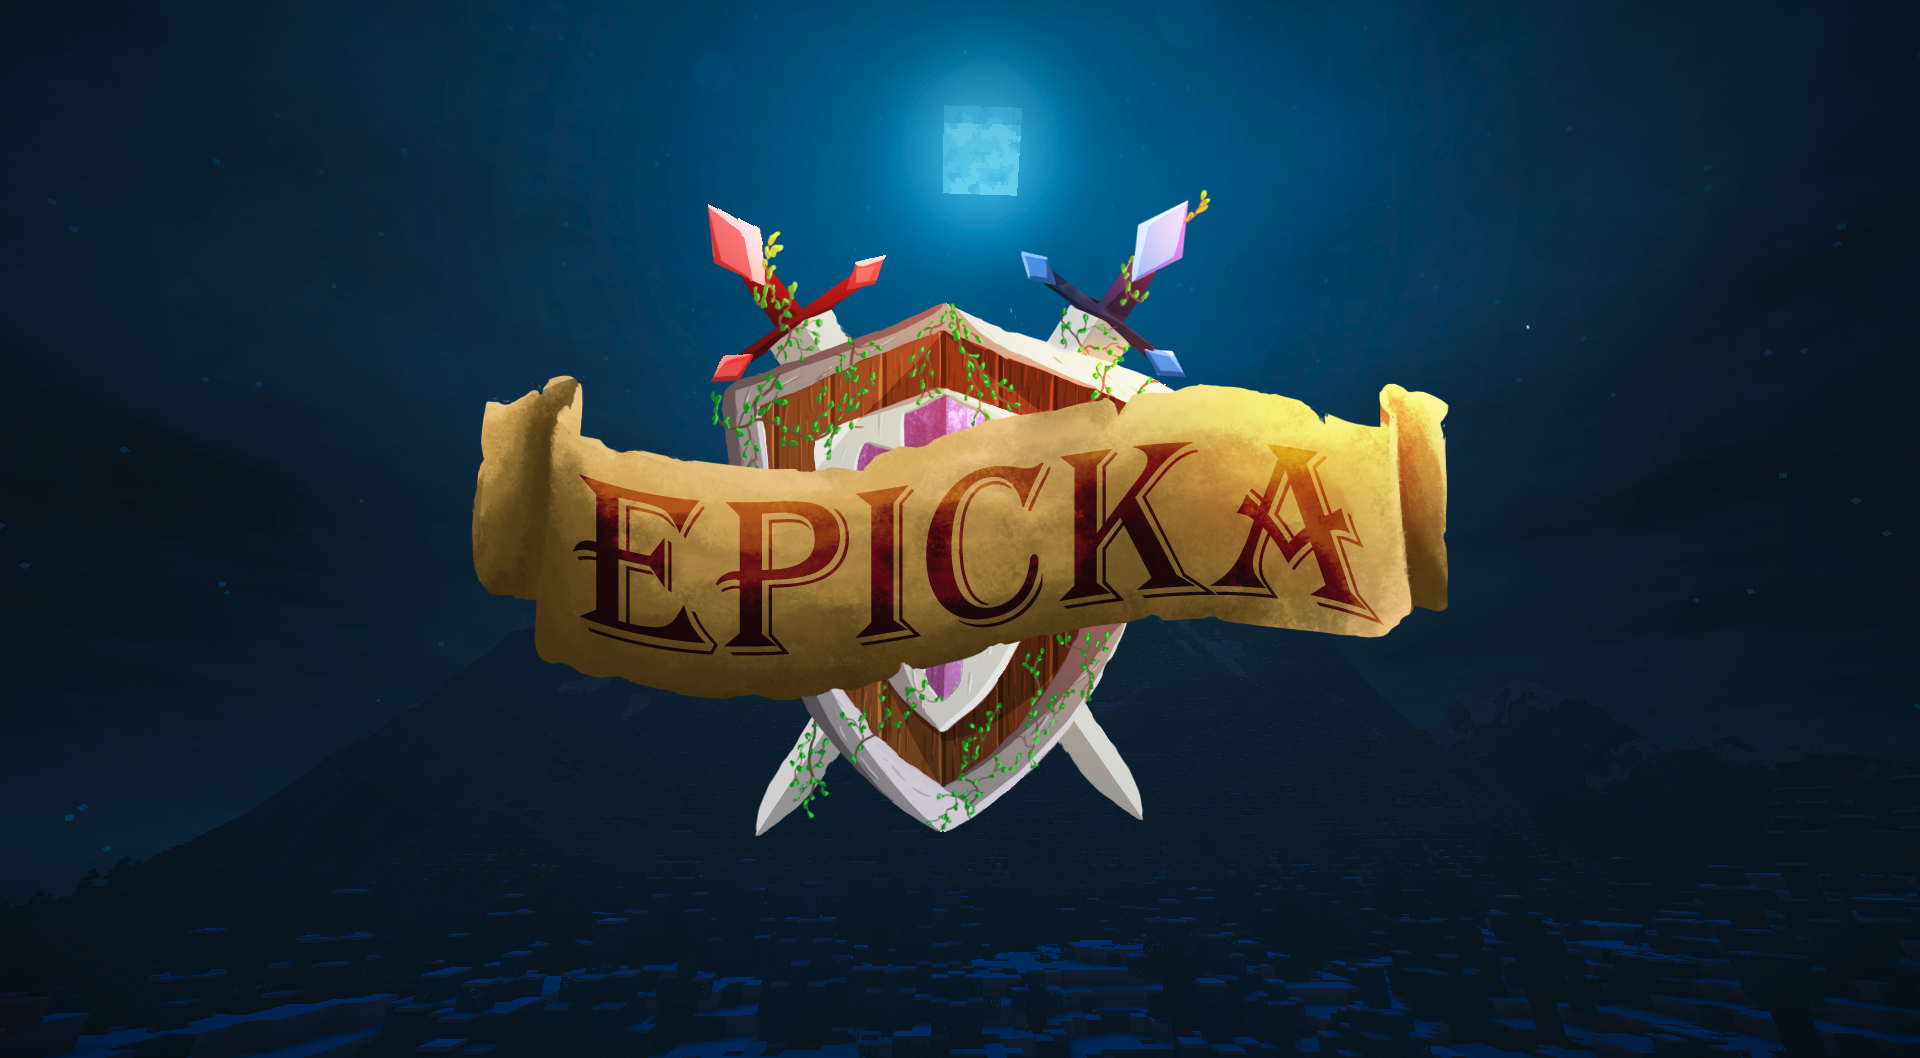 Epicka : Domination